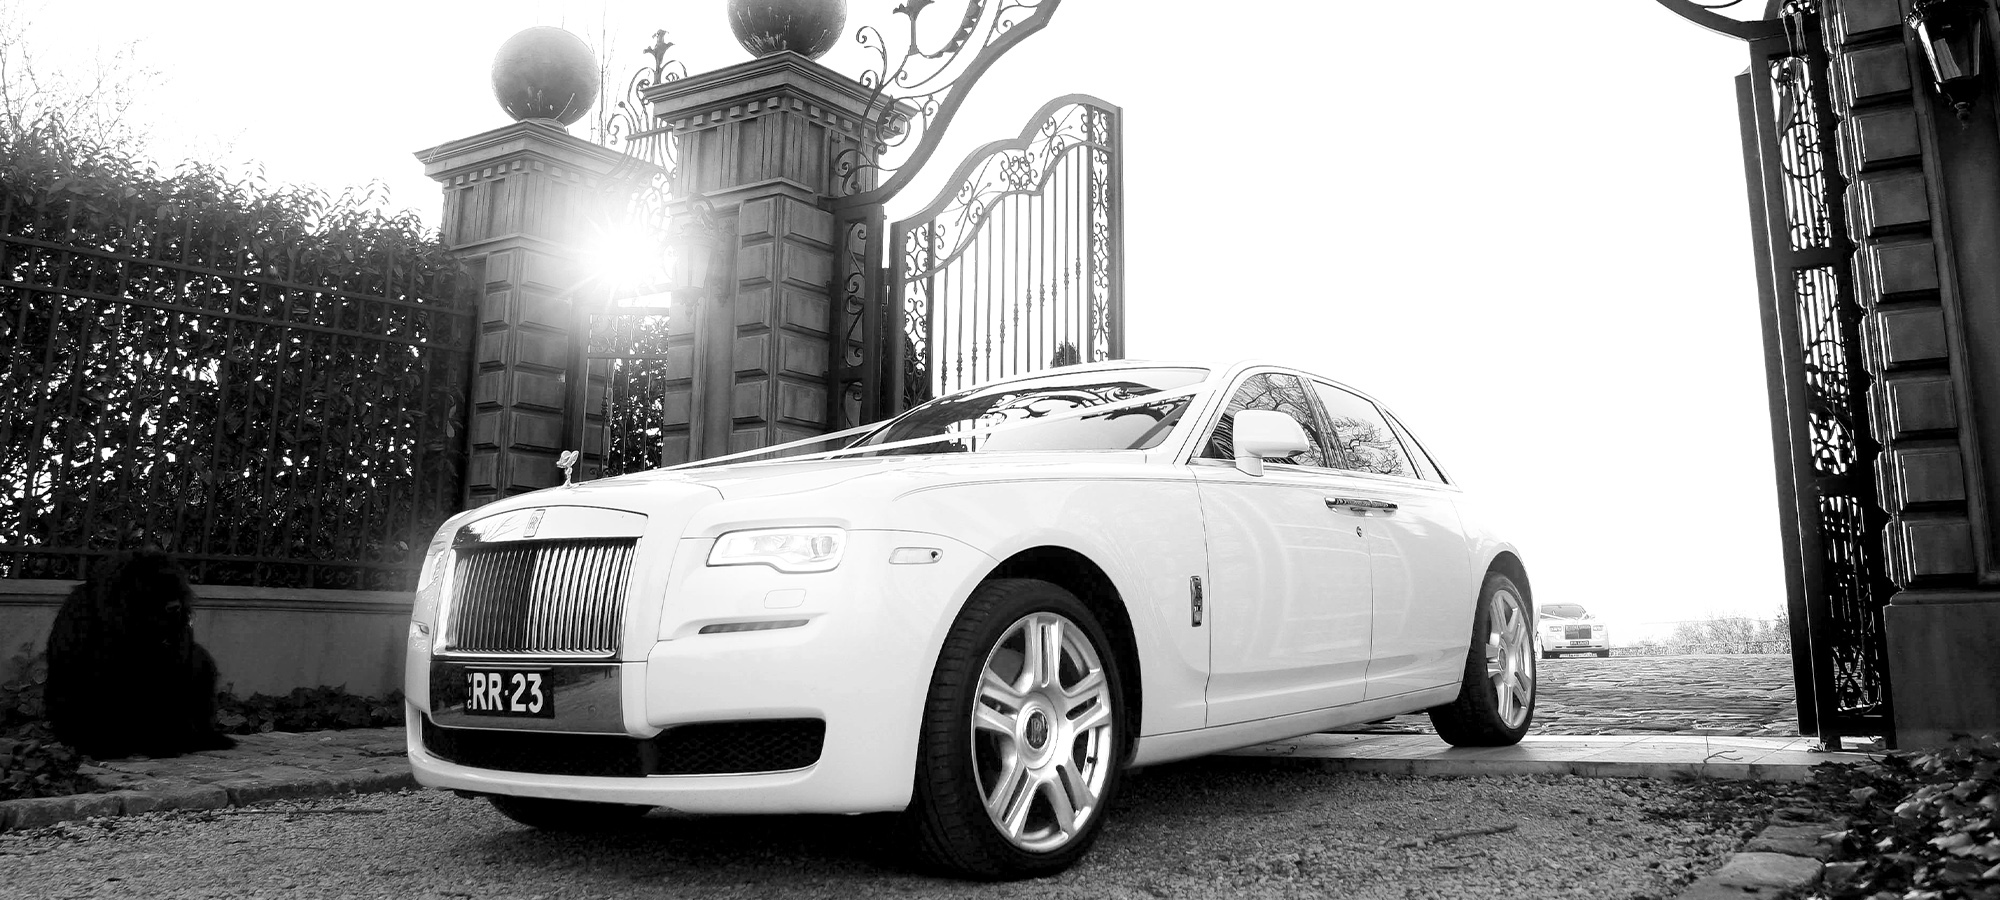 Rolls Royce Ghost sedan white, Rolls Royce wedding car hire